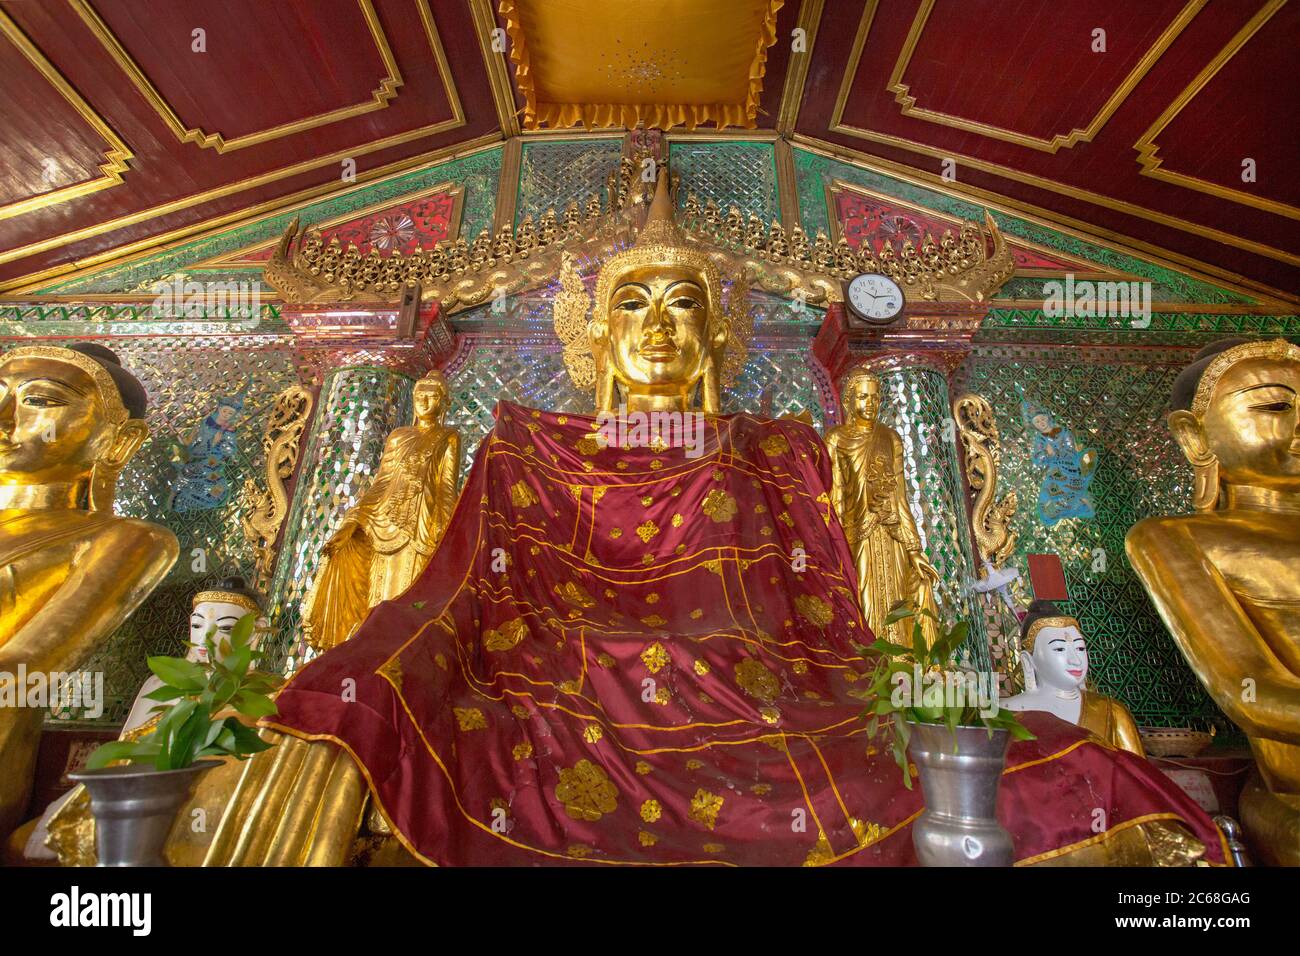 Buddha Statues in the Shwedagon Pagoda, Yangon, Myanmar Stock Photo